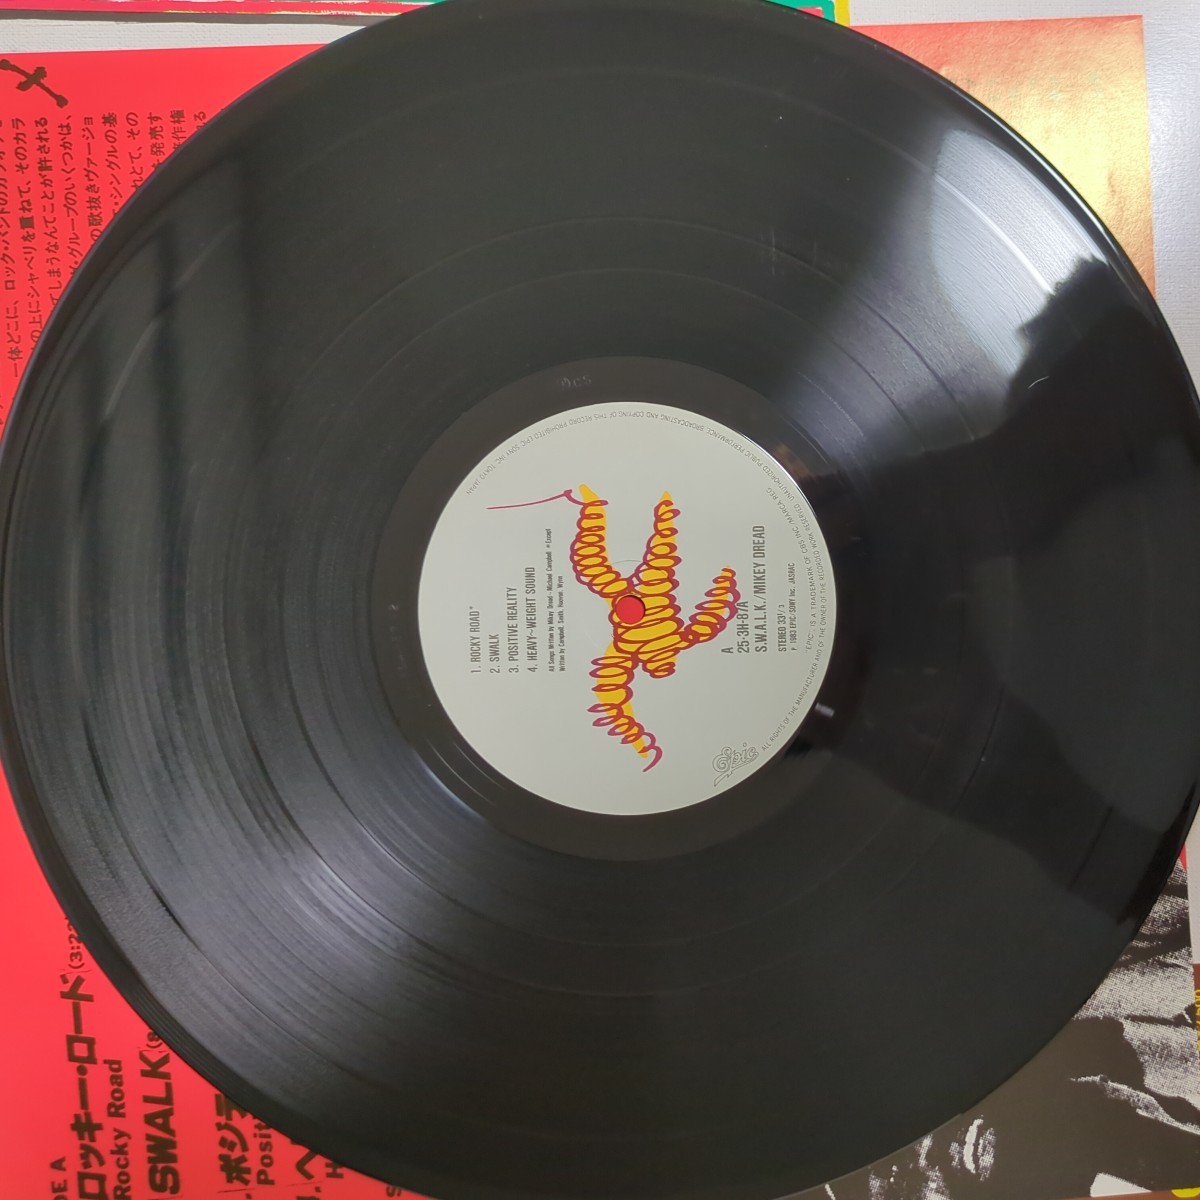 Mikey Dread S.W.A.L.K. マイキー・ドレッド the clash クラッシュ analog record レコード LP アナログ vinyl_画像6